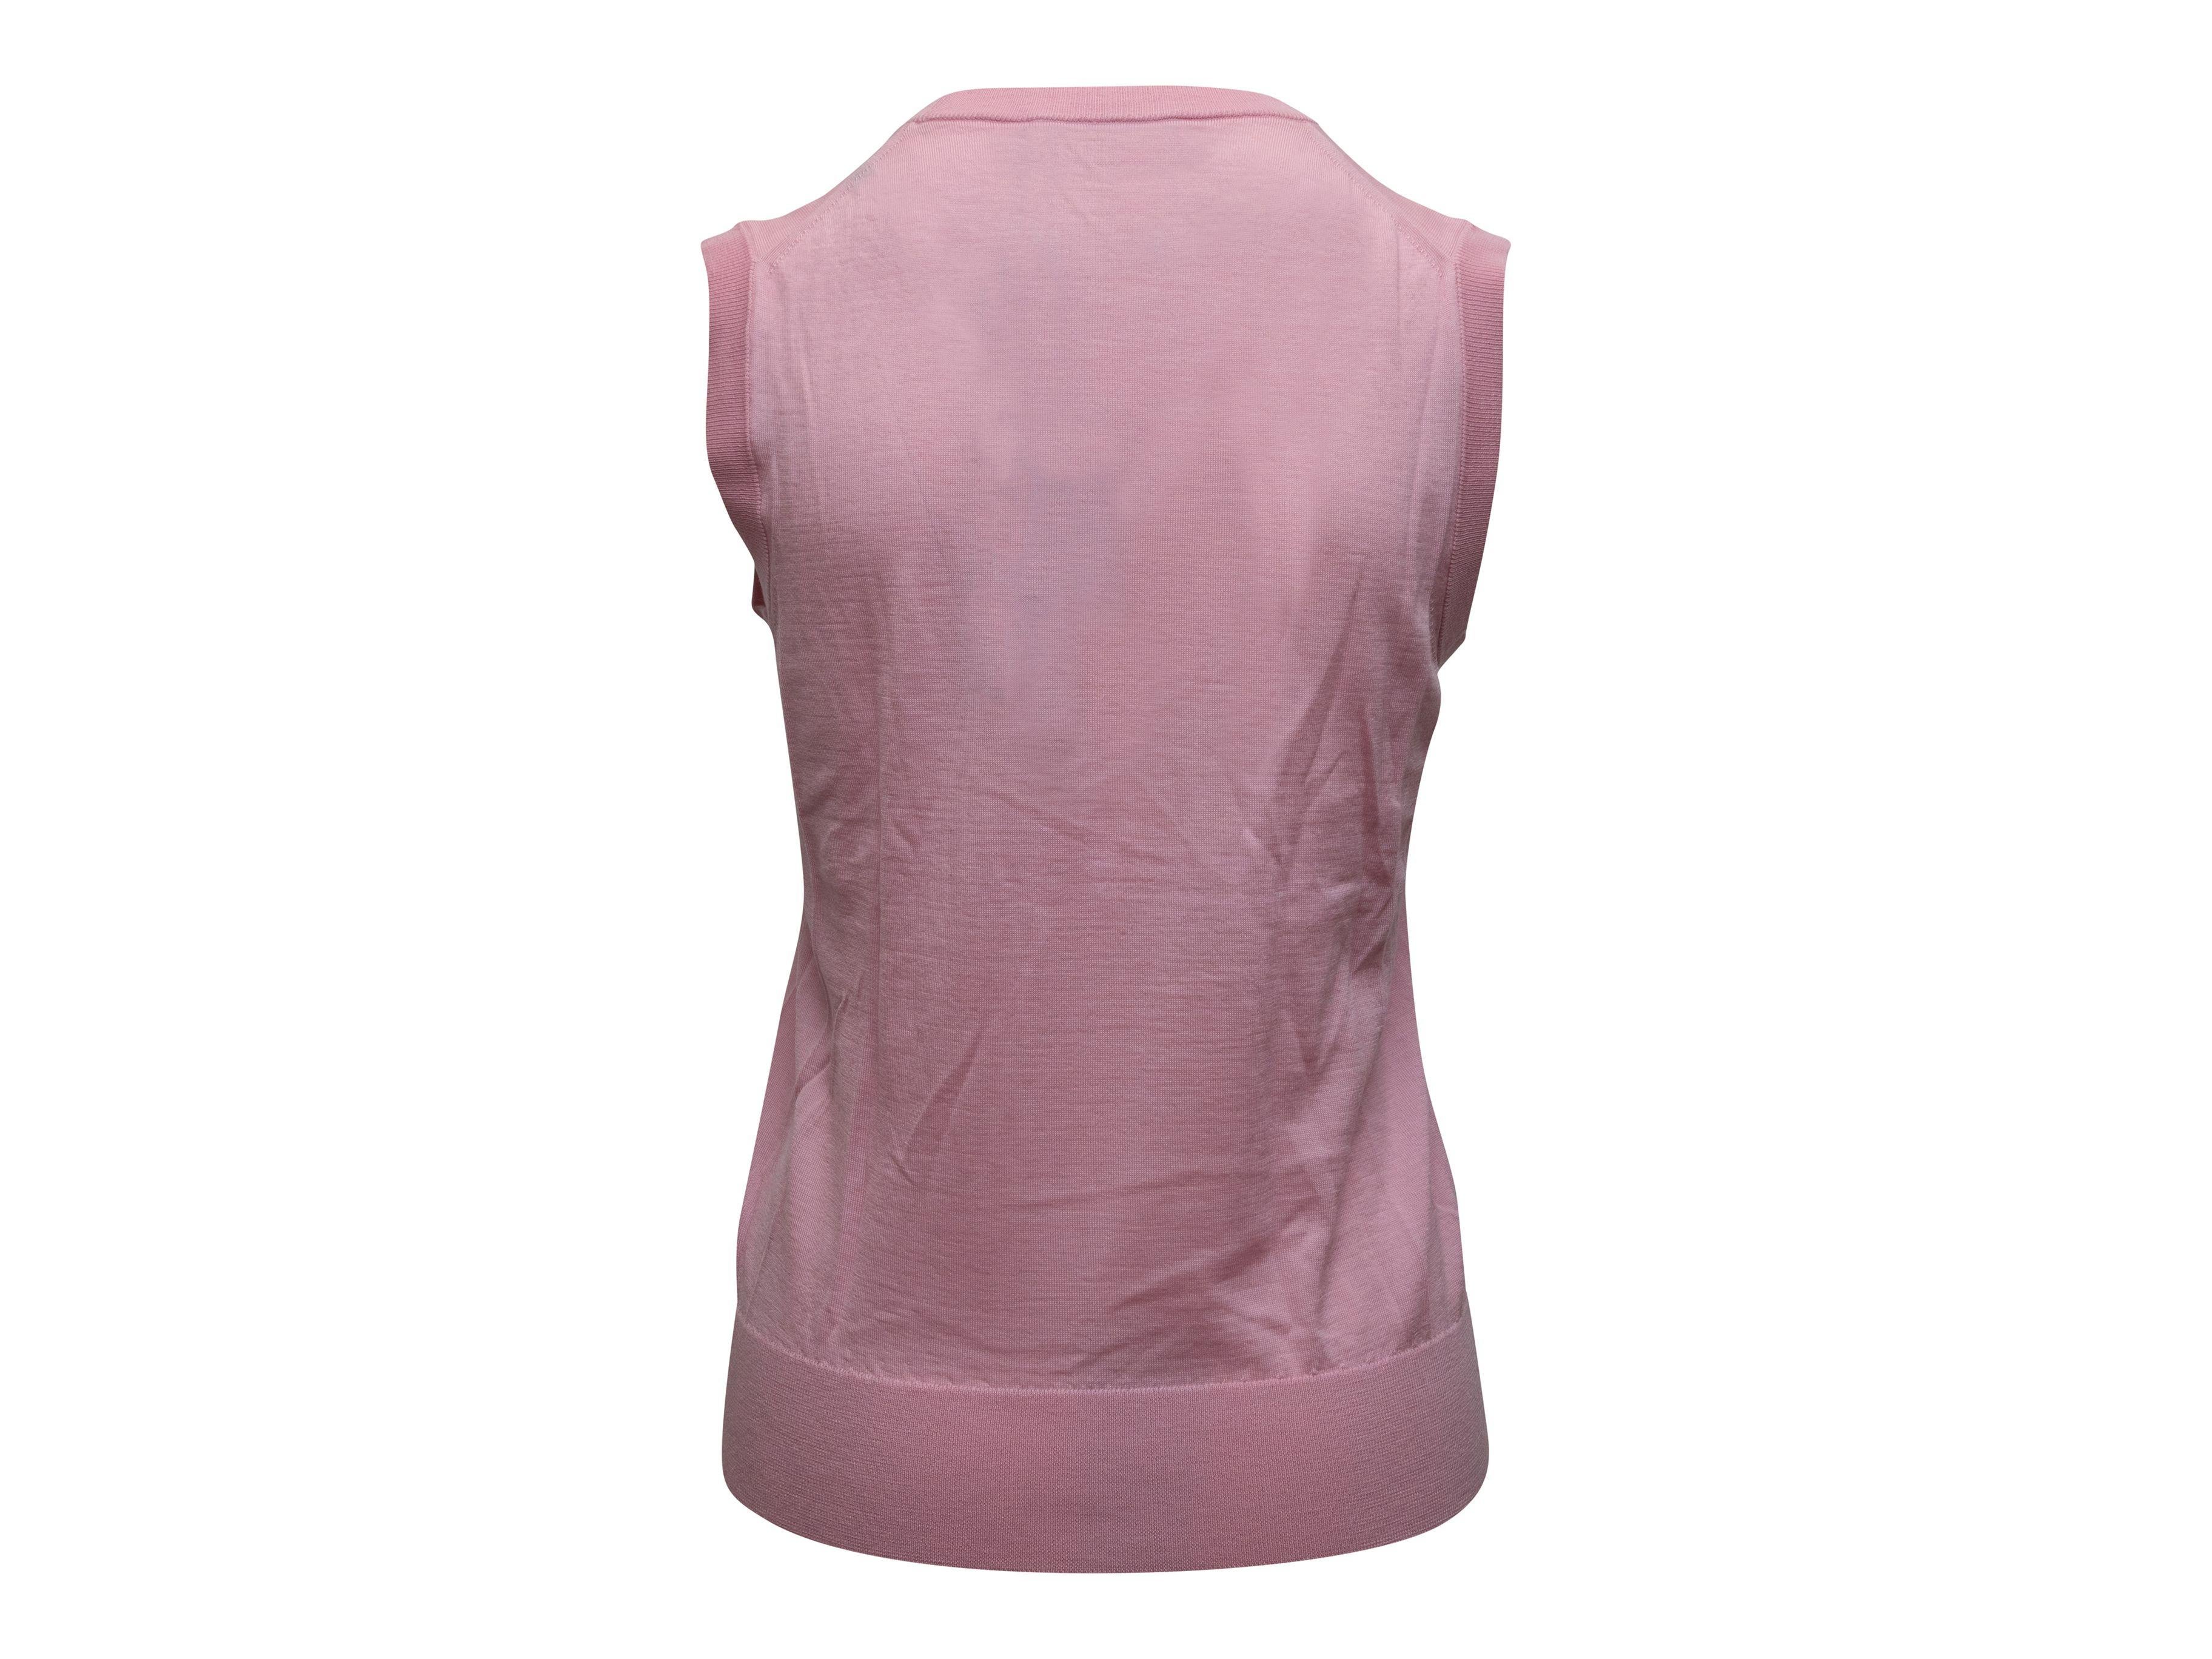 Dolce & Gabbana Light Pink Sleeveless Cashmere Top 3